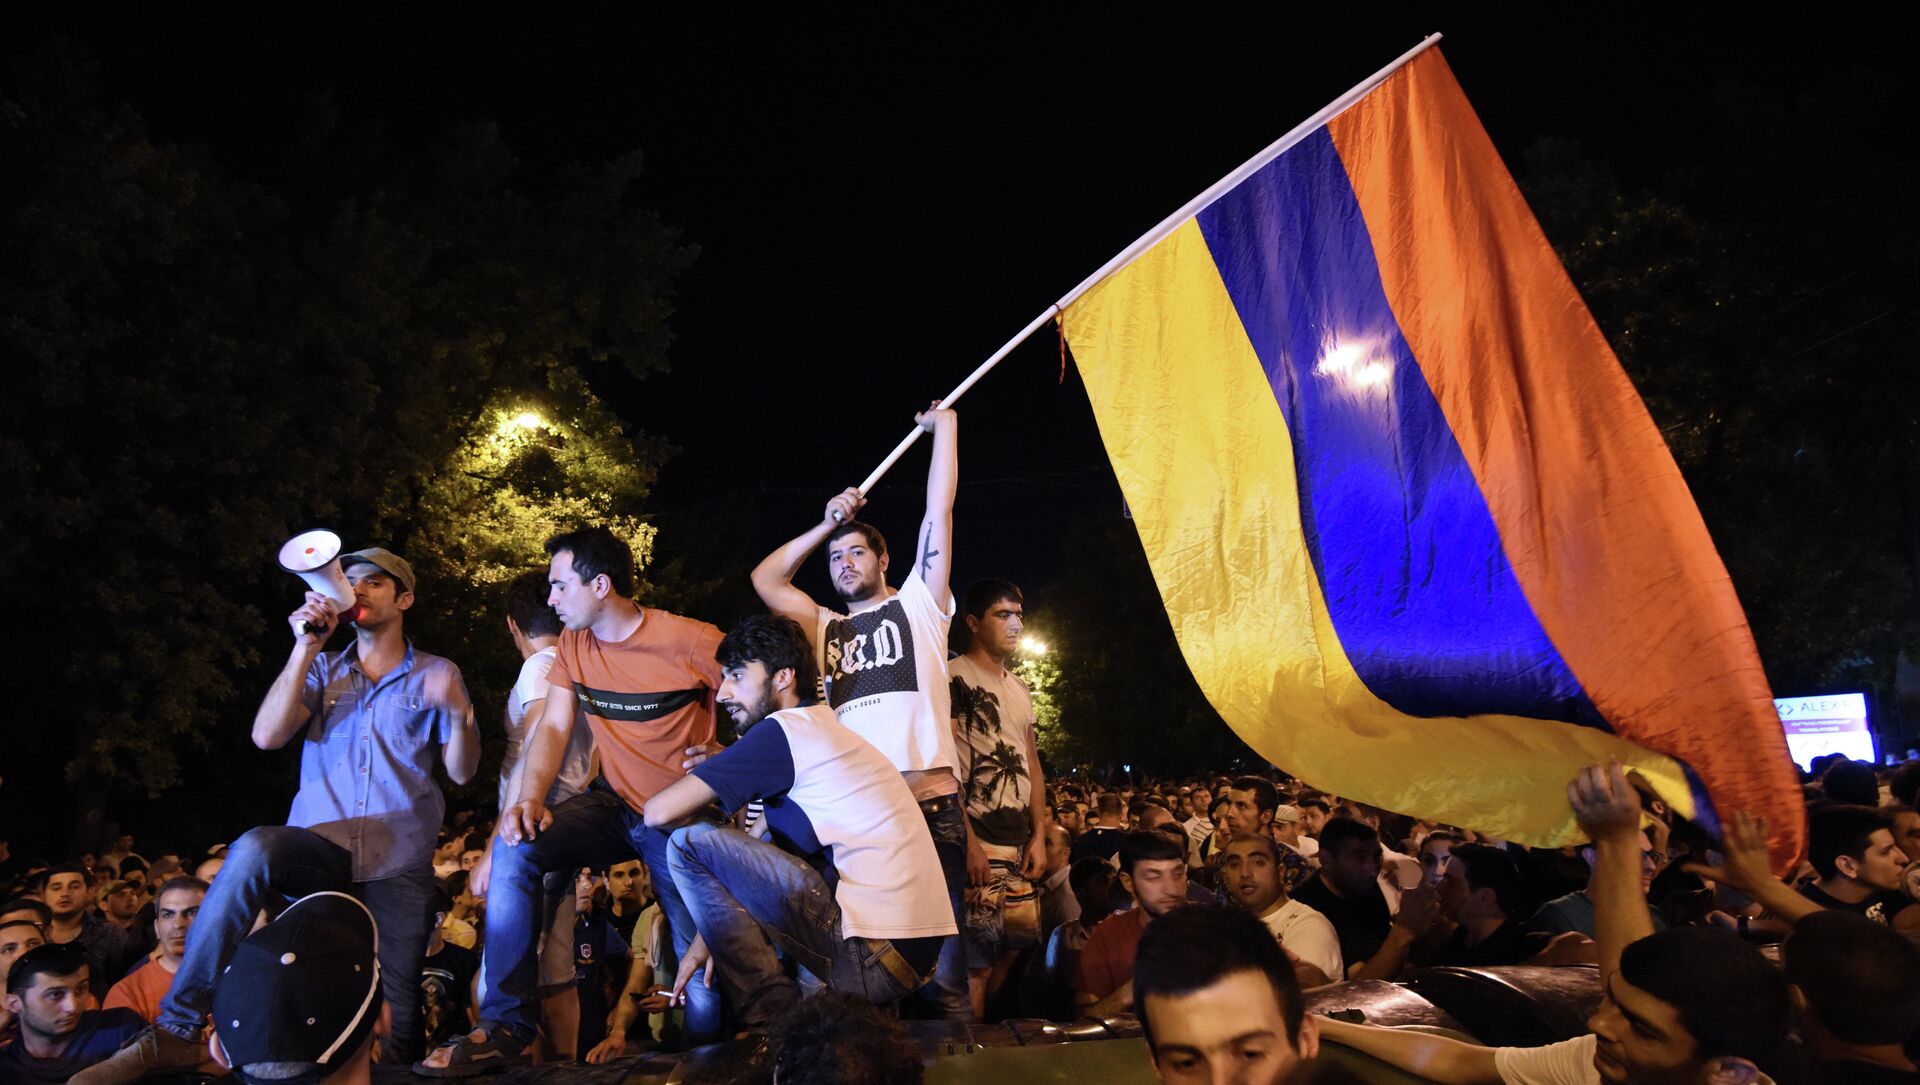 Акция протеста против повышения цен на электроэнергию в столице Ереване.23 июня 2015. - Sputnik Абхазия, 1920, 22.06.2021